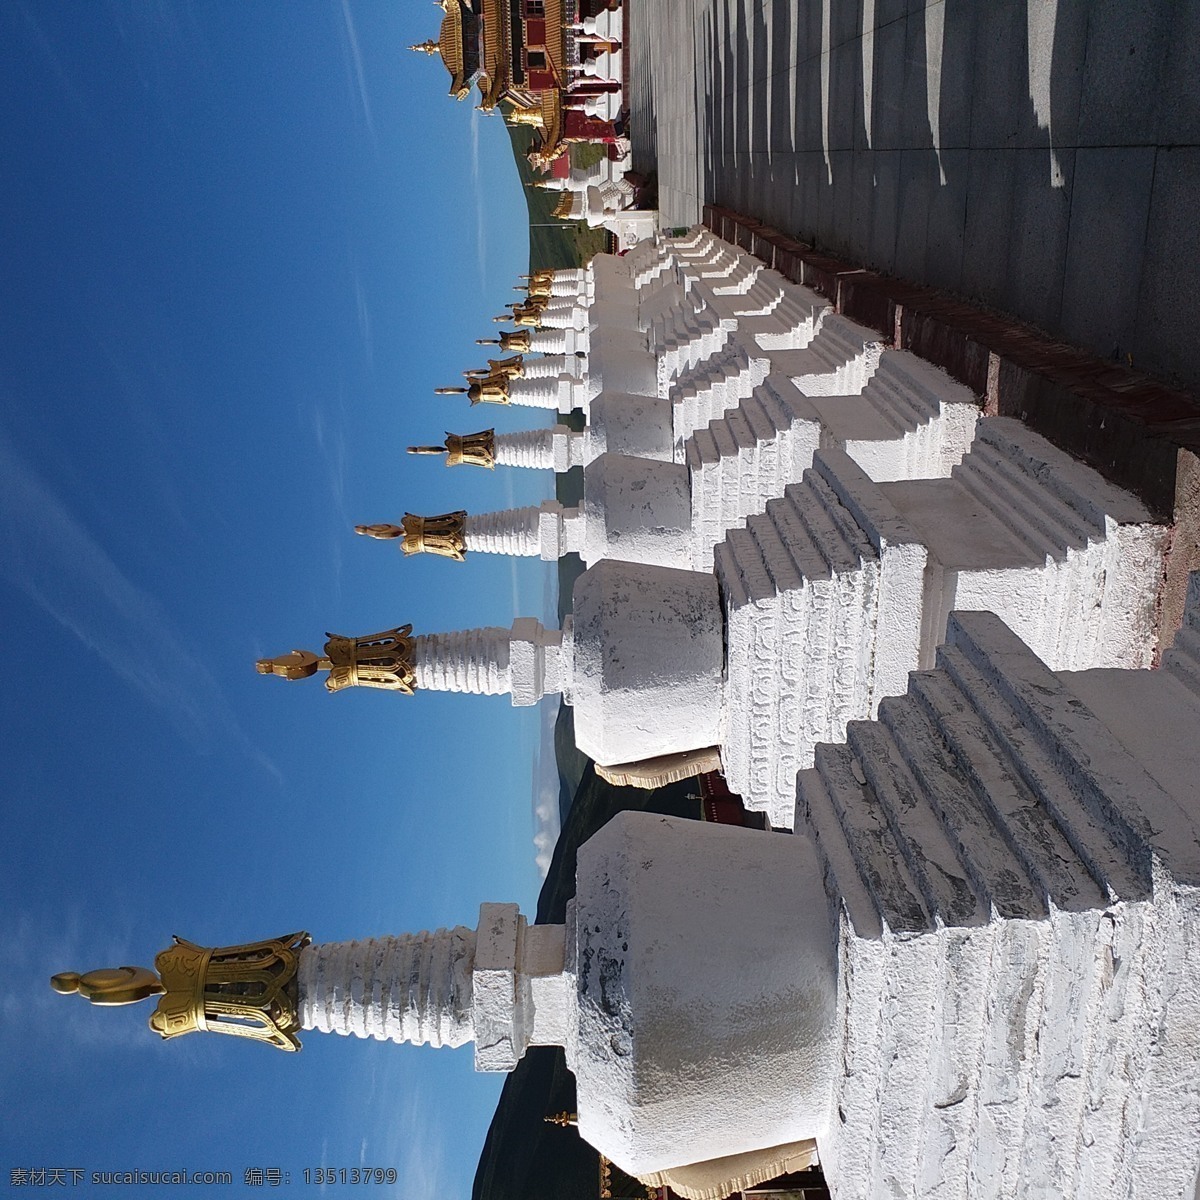 藏族白塔 佛塔 喇嘛塔 藏式喇嘛塔 自然景观 建筑景观